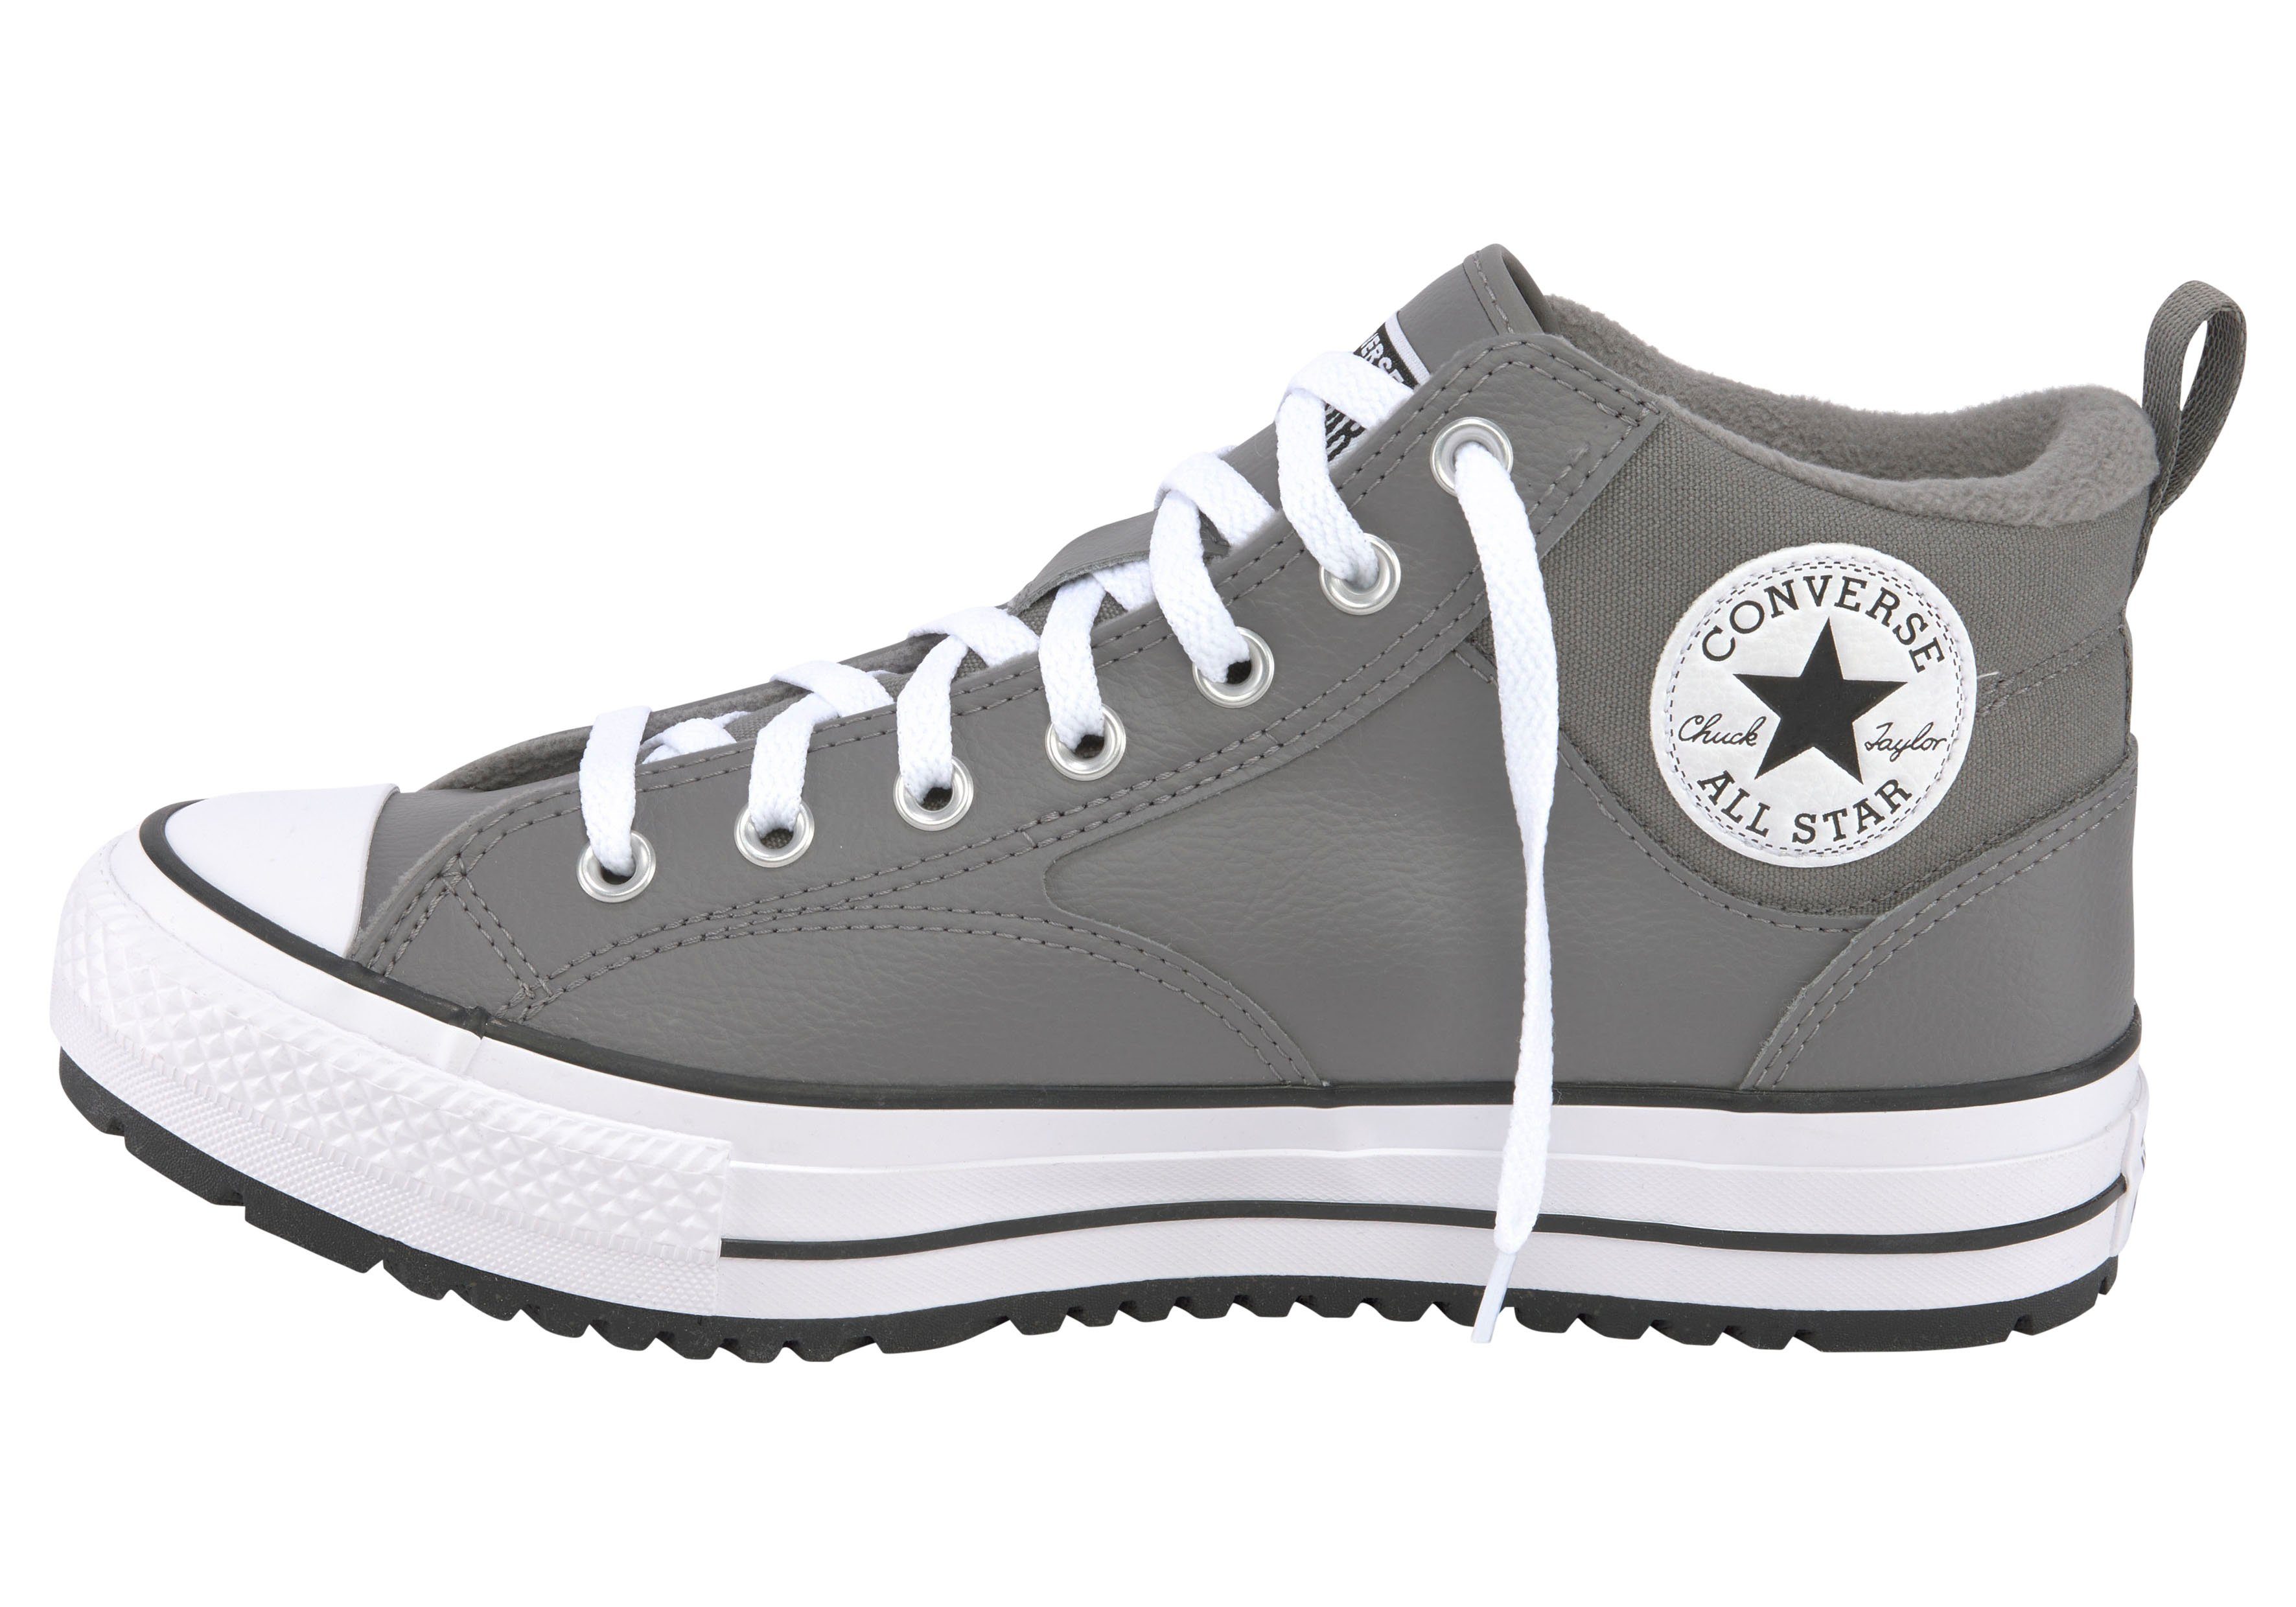 Converse CHUCK TAYLOR ALL STAR MALDEN Warmfutter STREET Sneakerboots